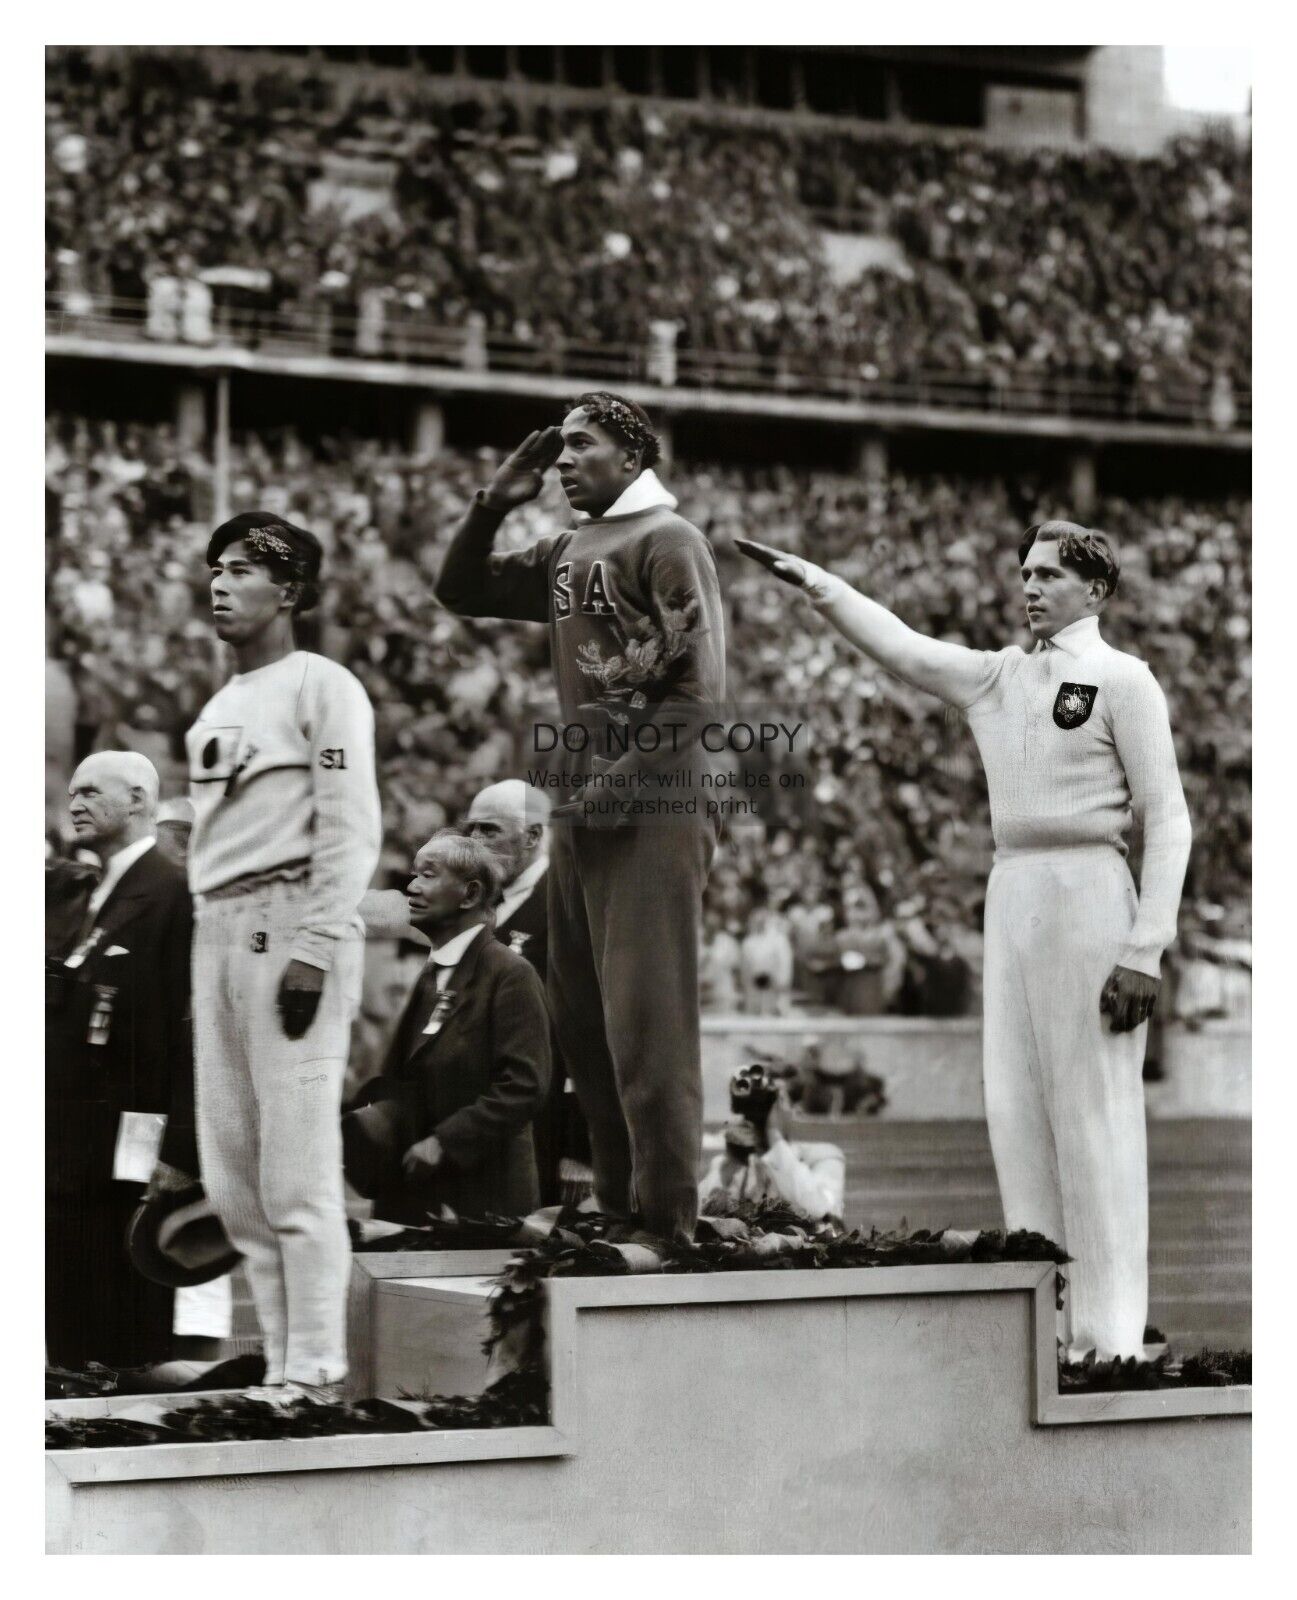 JESSIE OWENS STANDING ON PODIUM AT 1936 OLYMPICS BERLIN GERMANY 8X10 B&W PHOTO